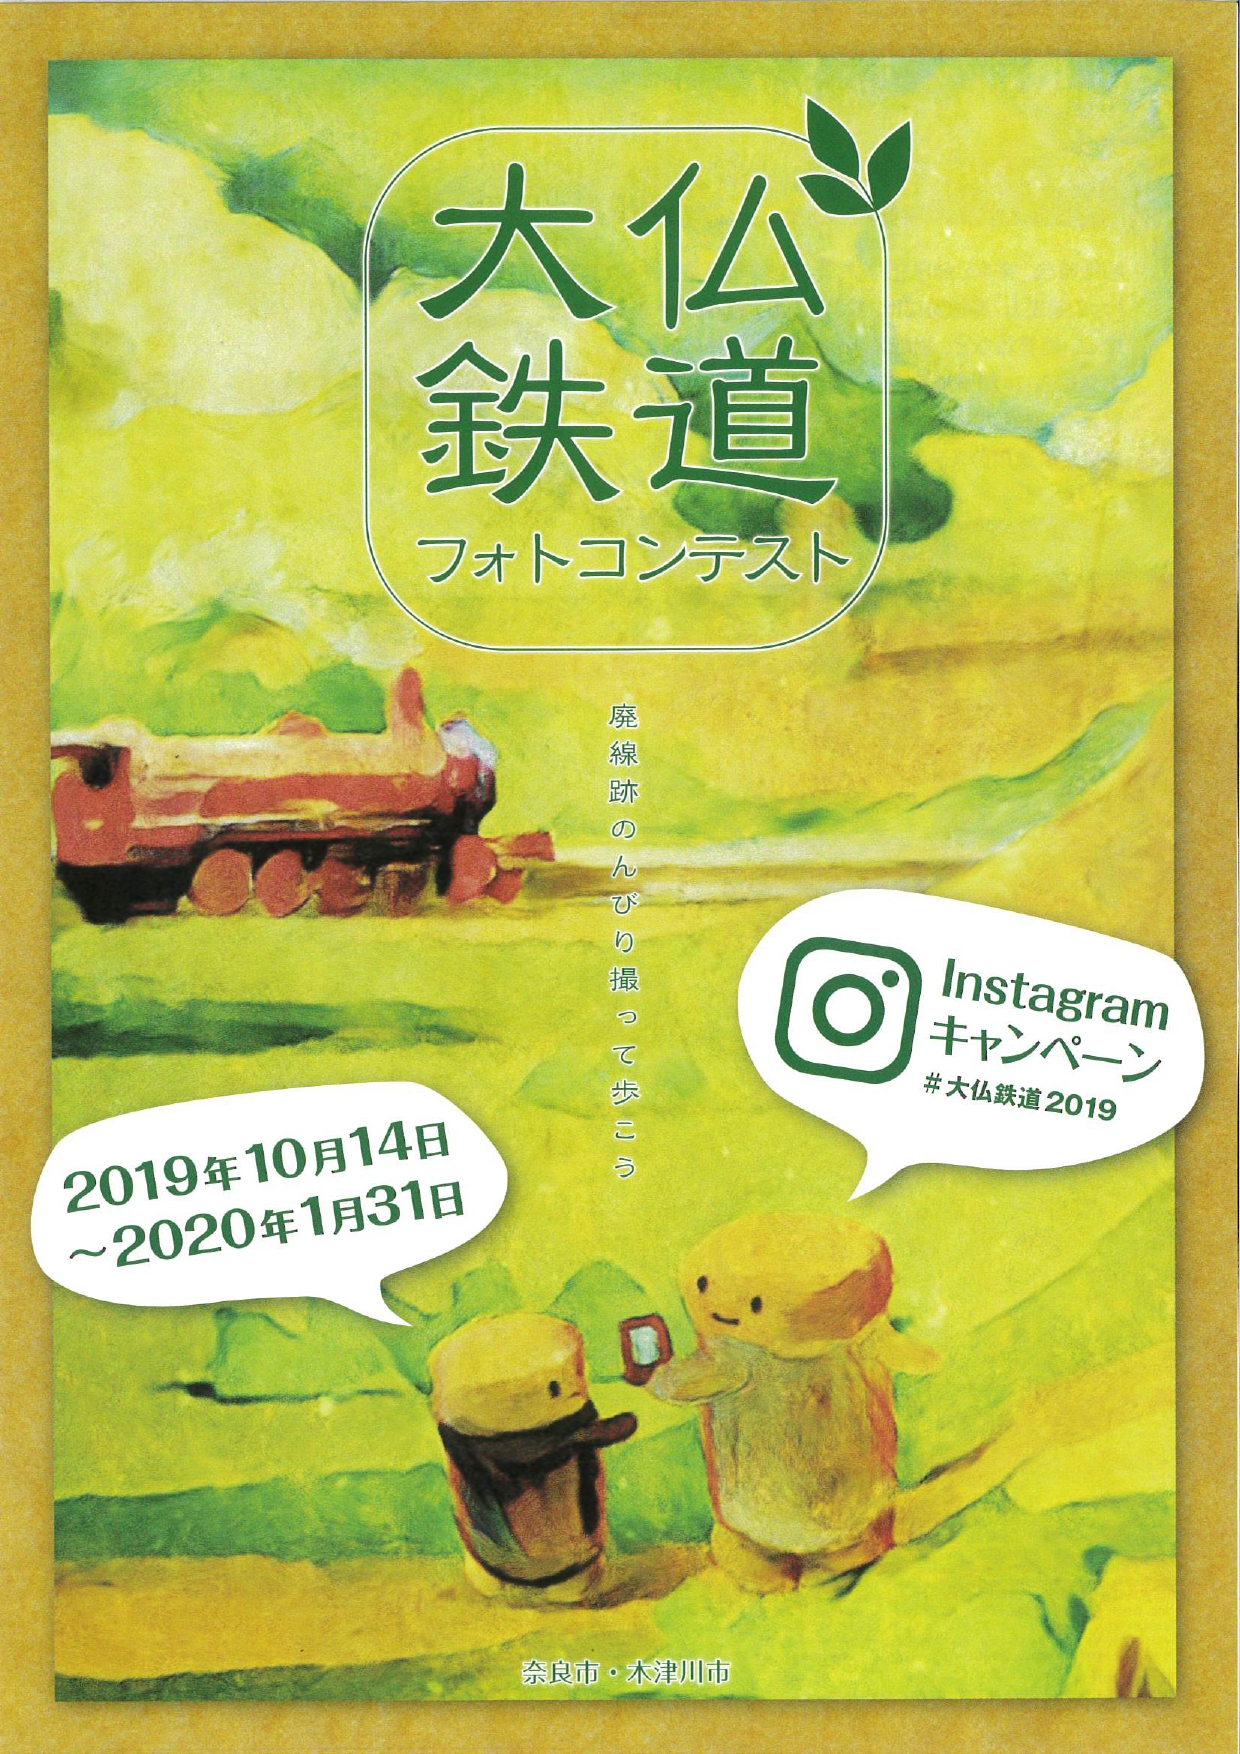 「大仏鉄道フォトコンテスト ―Instagramキャンペーン―」開催について（令和元年10月7日発表）の画像1